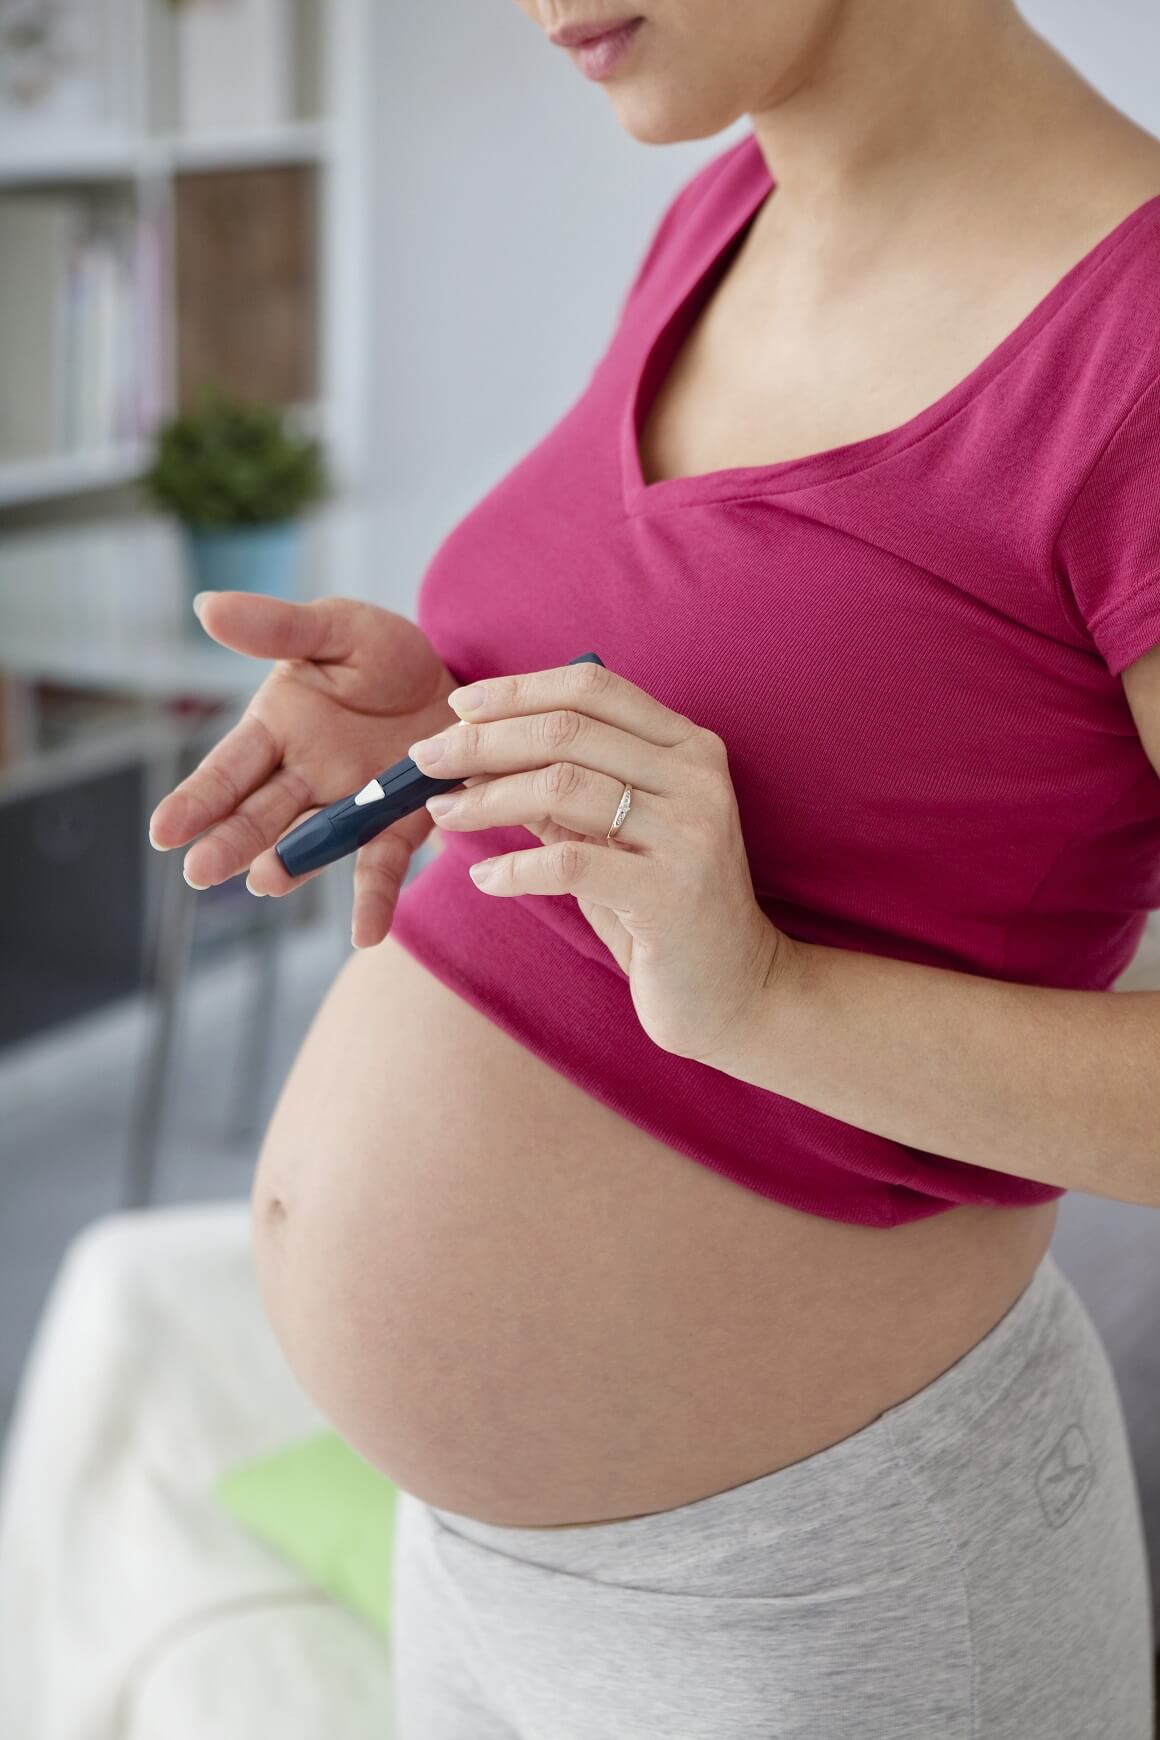 Žene s dijabetesom imaju veću vjerojatnost da će roditi dijete s Dandy-Walkerovim sindromom